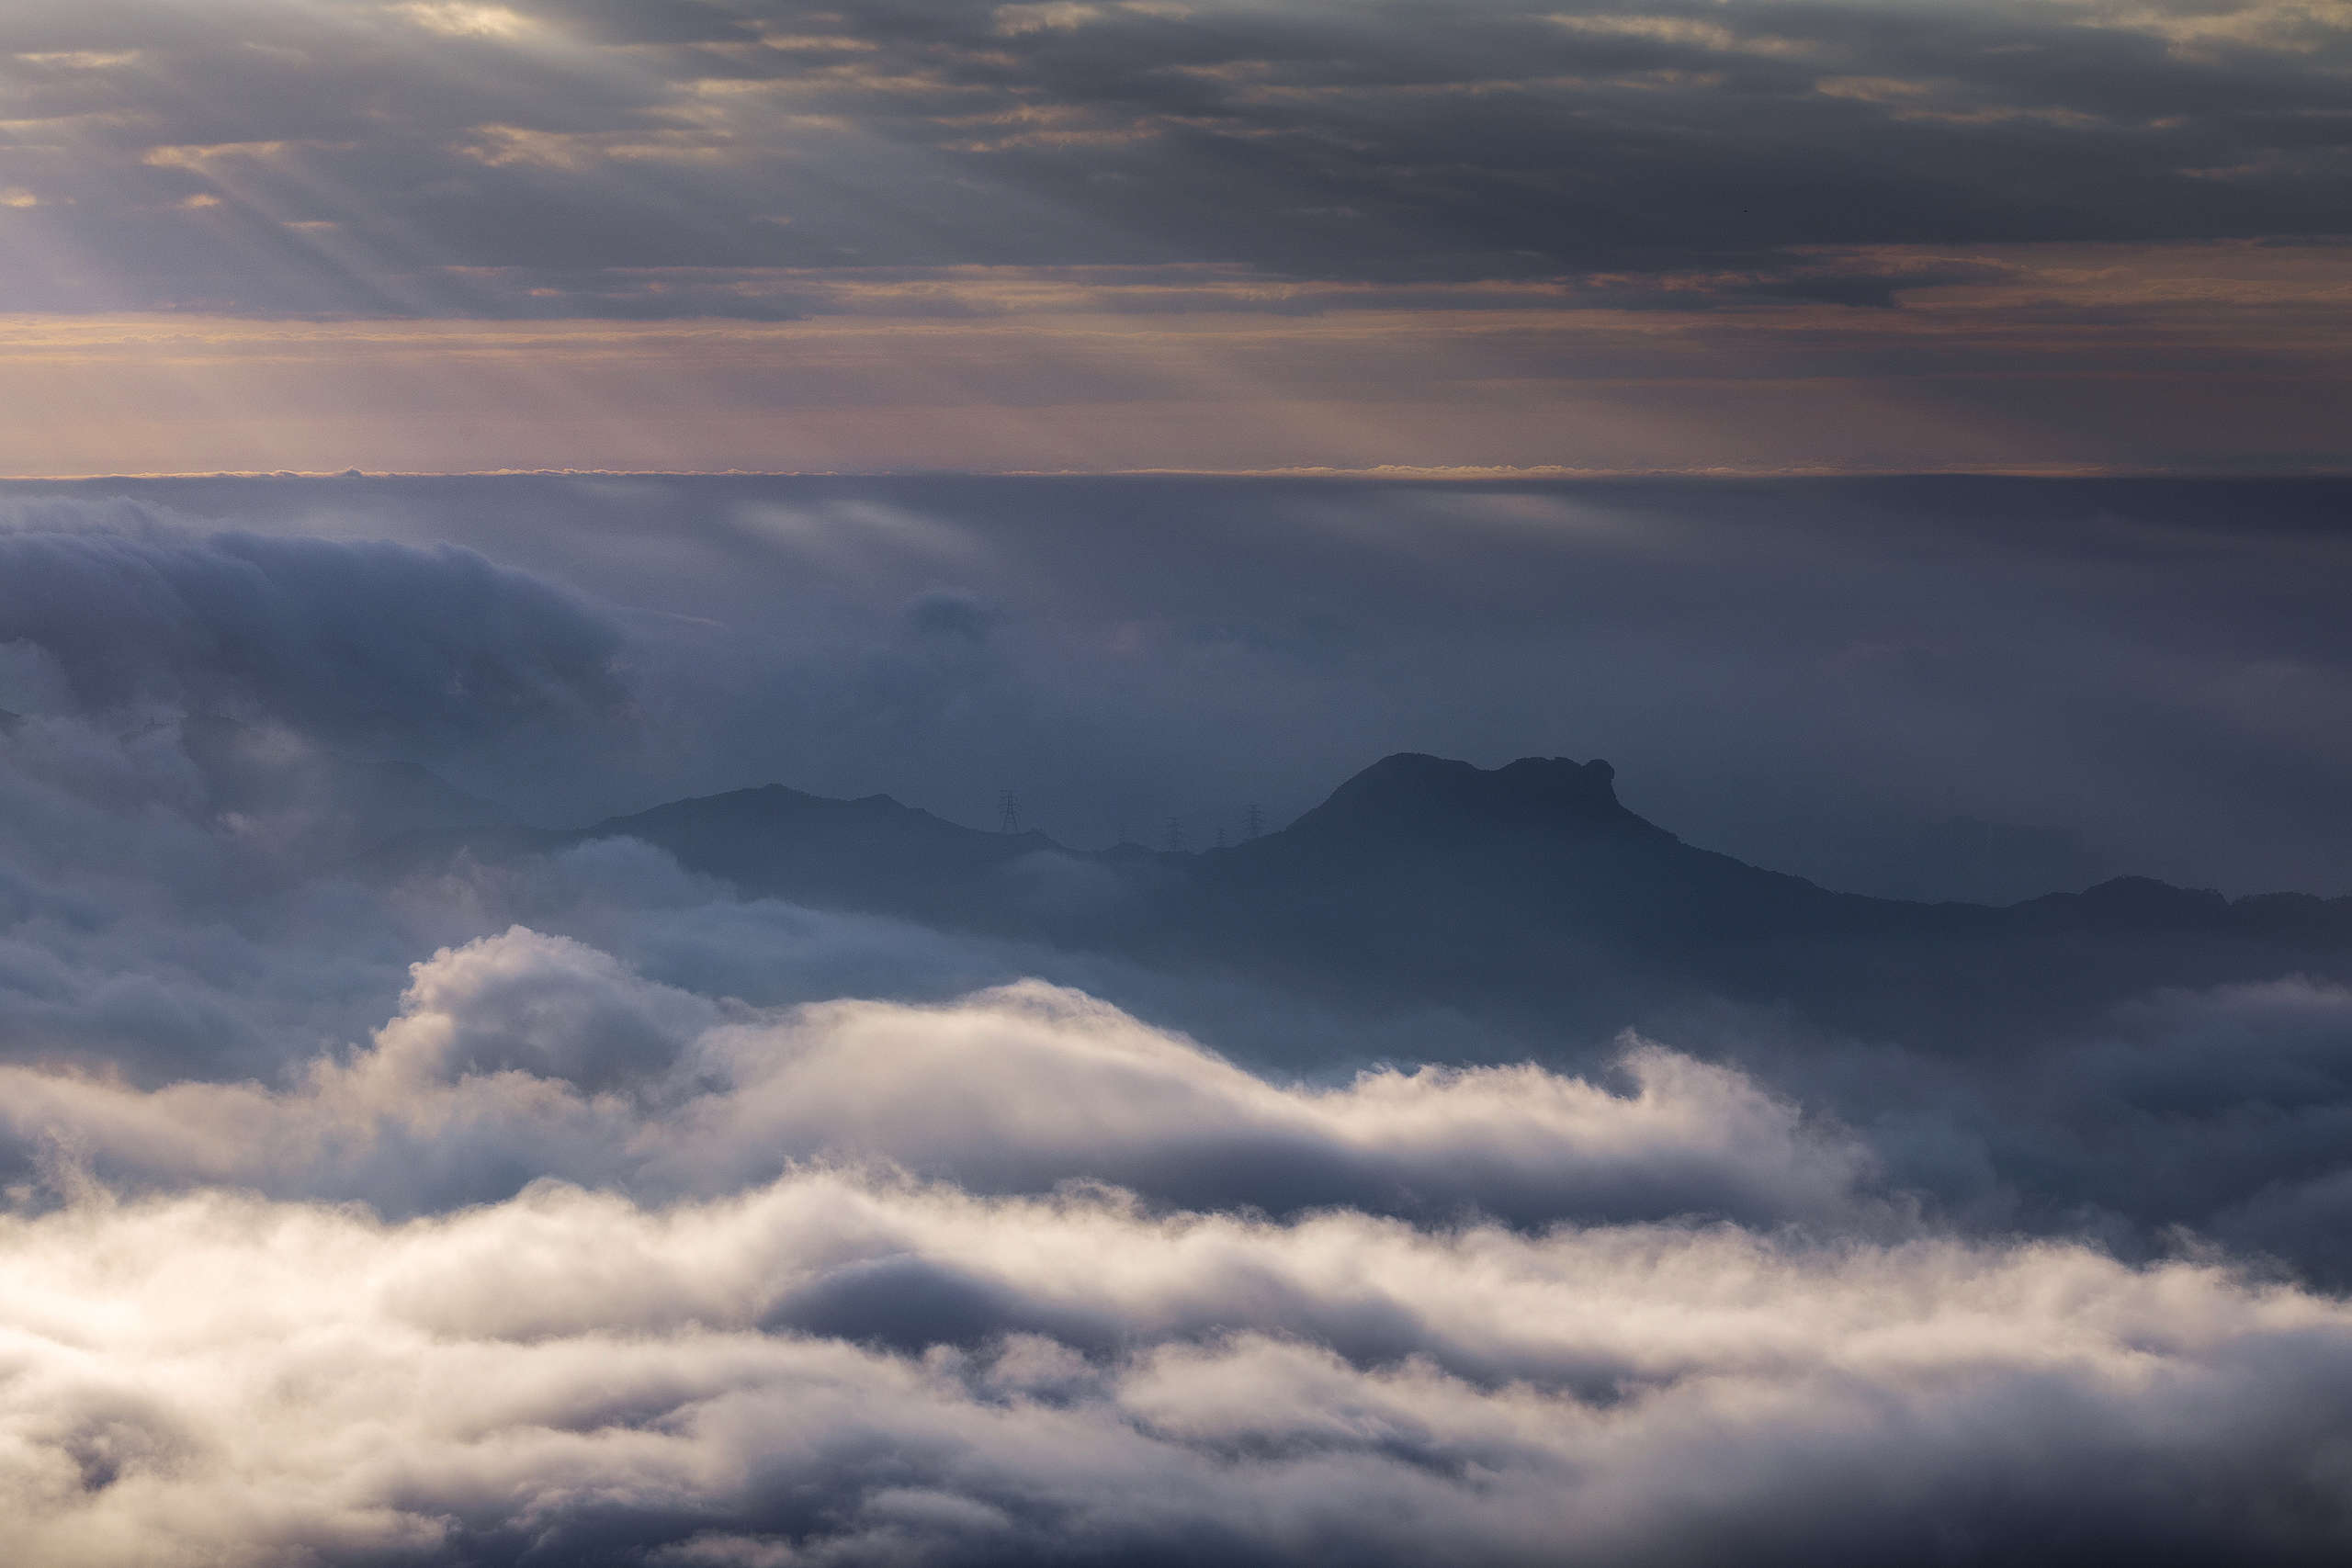 雲海上的獅子山。 © Kelvin Yuen